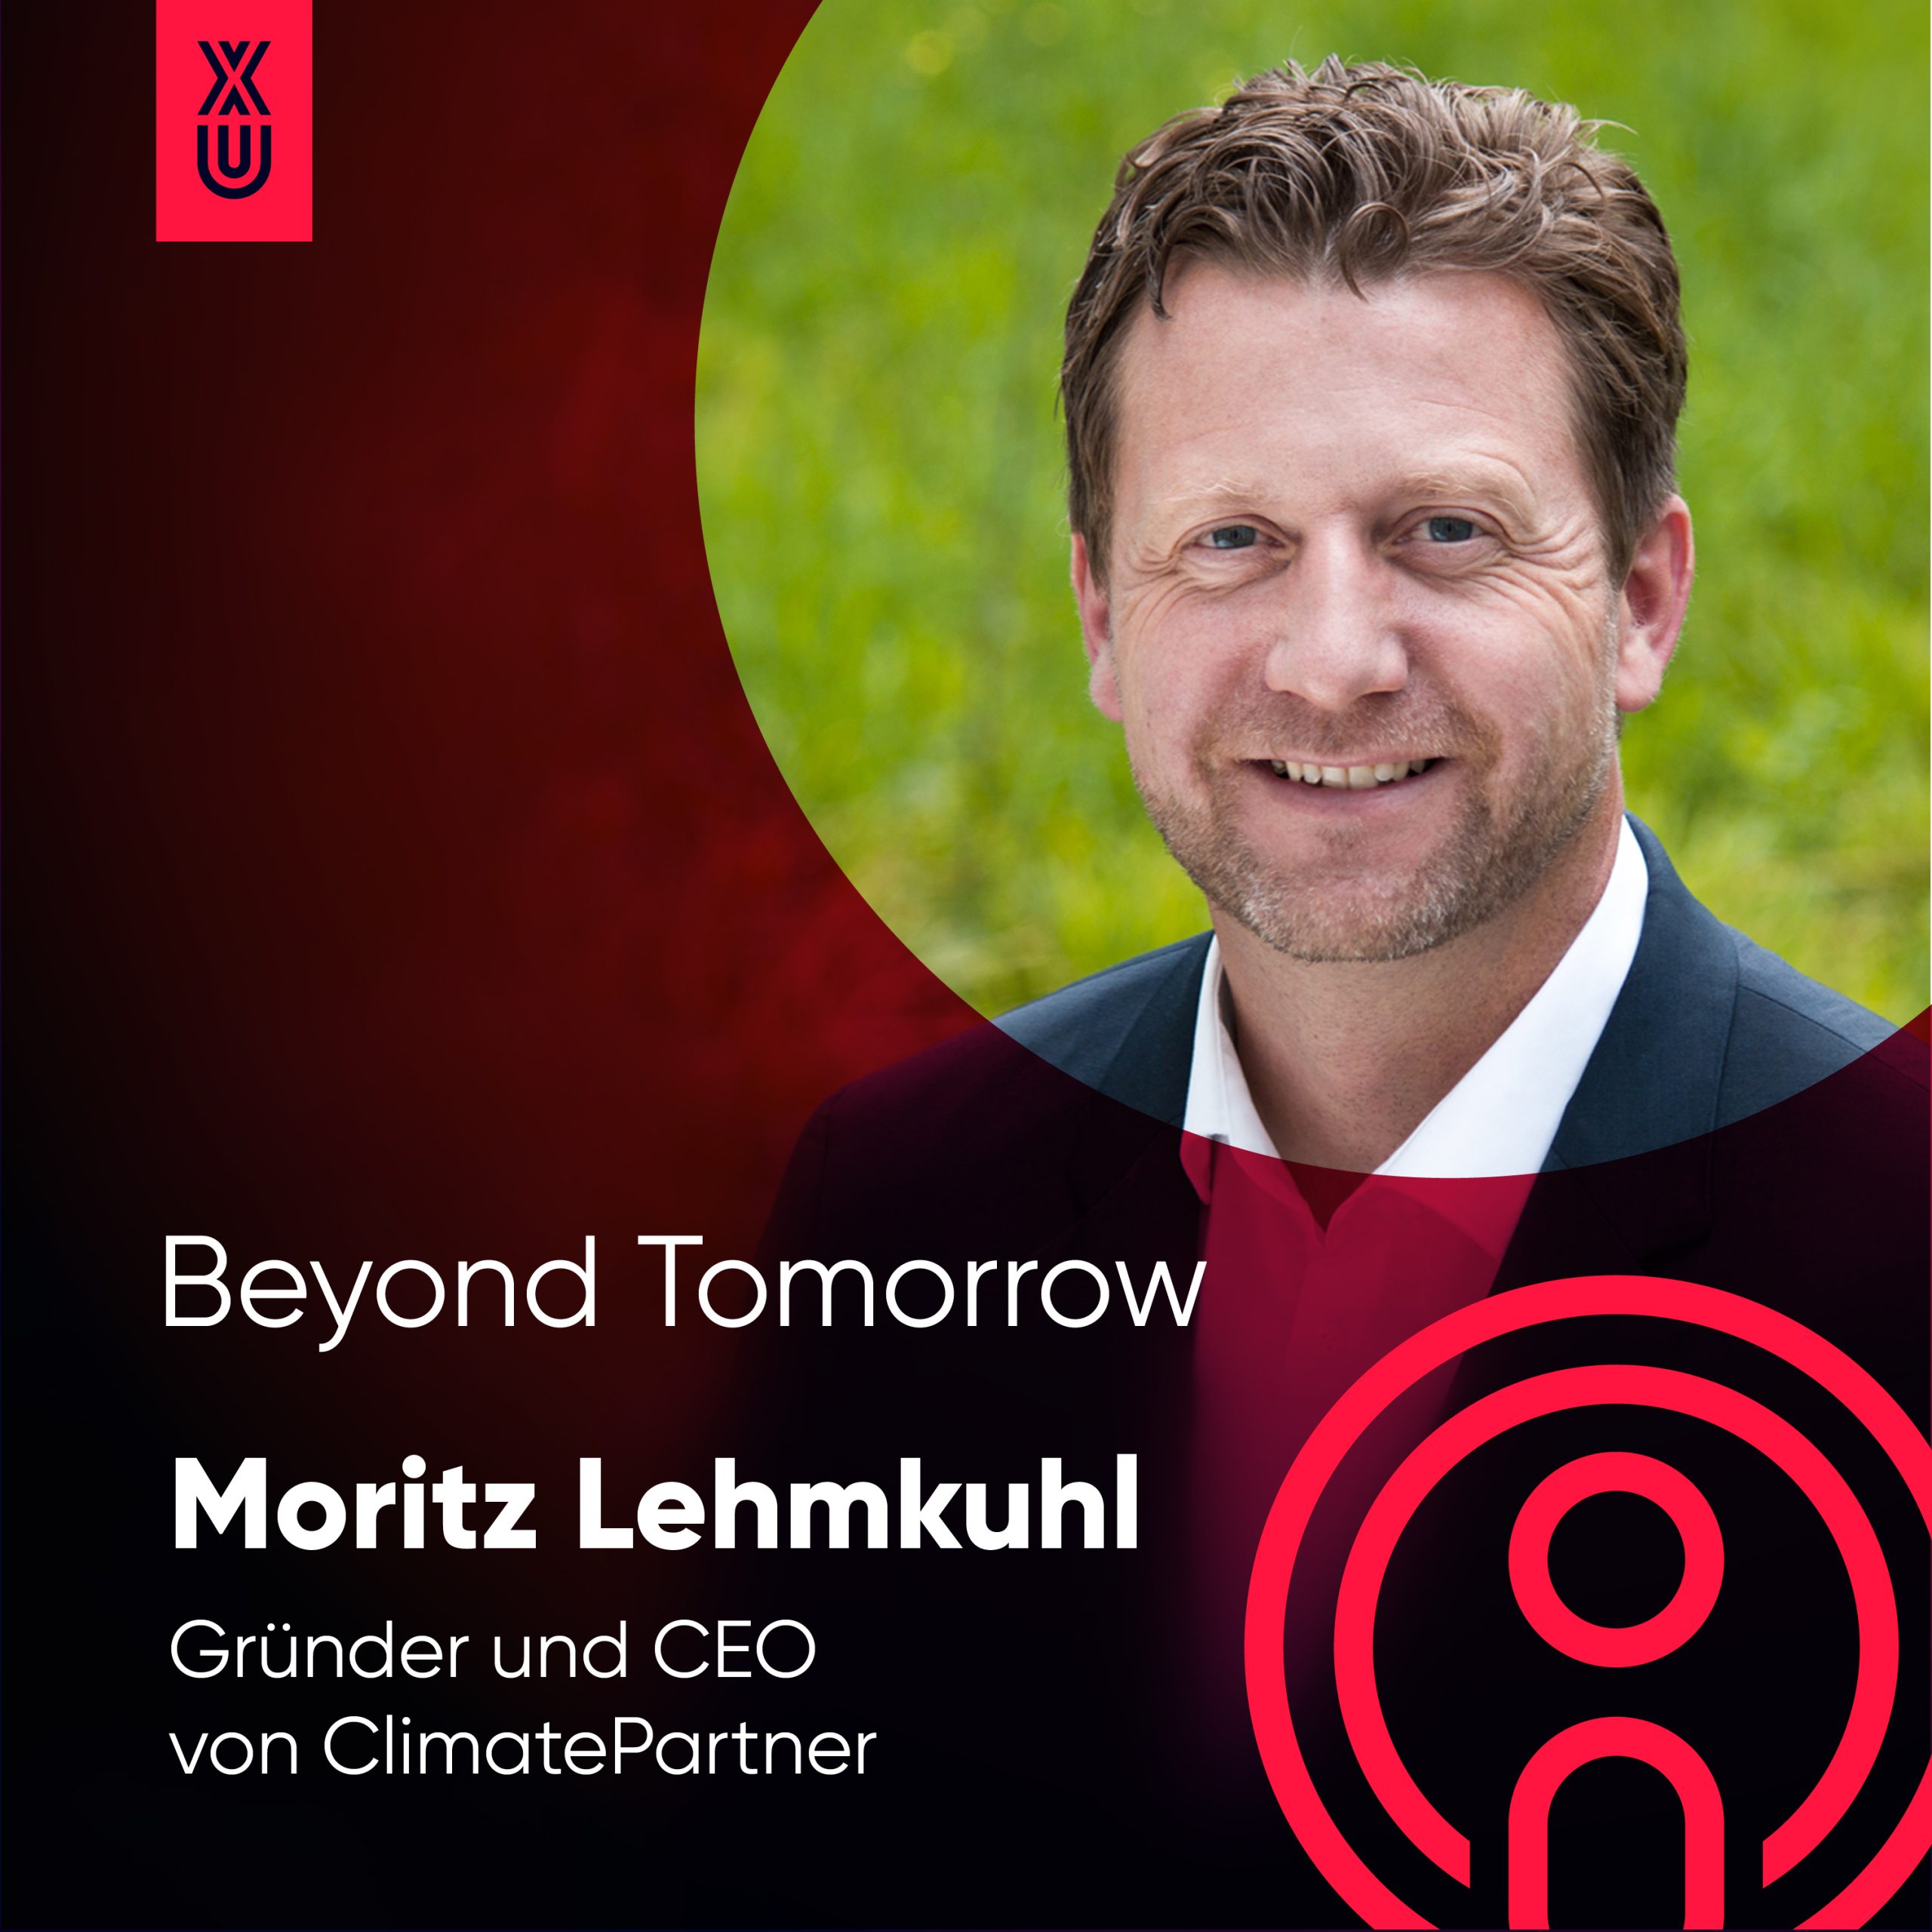 “Nachhaltig und verantwortungsvoll zu agieren, gehört heute zum Wirtschaften dazu.” mit Moritz Lehmkuhl